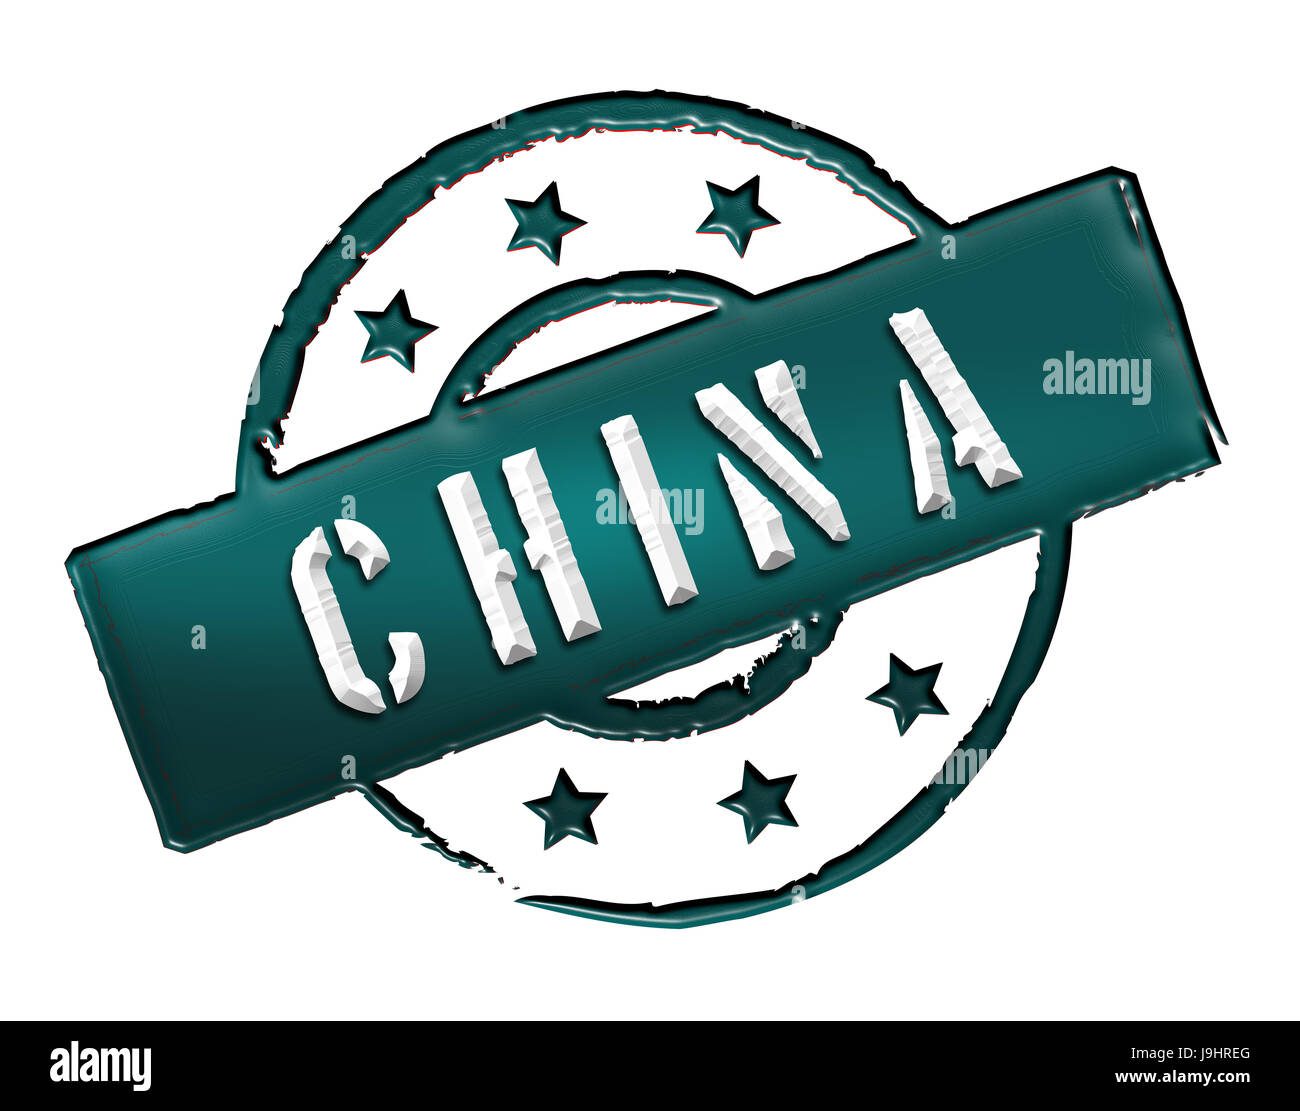 Accidentalmente Funeral Lo siento Ejército chino Imágenes recortadas de stock - Alamy